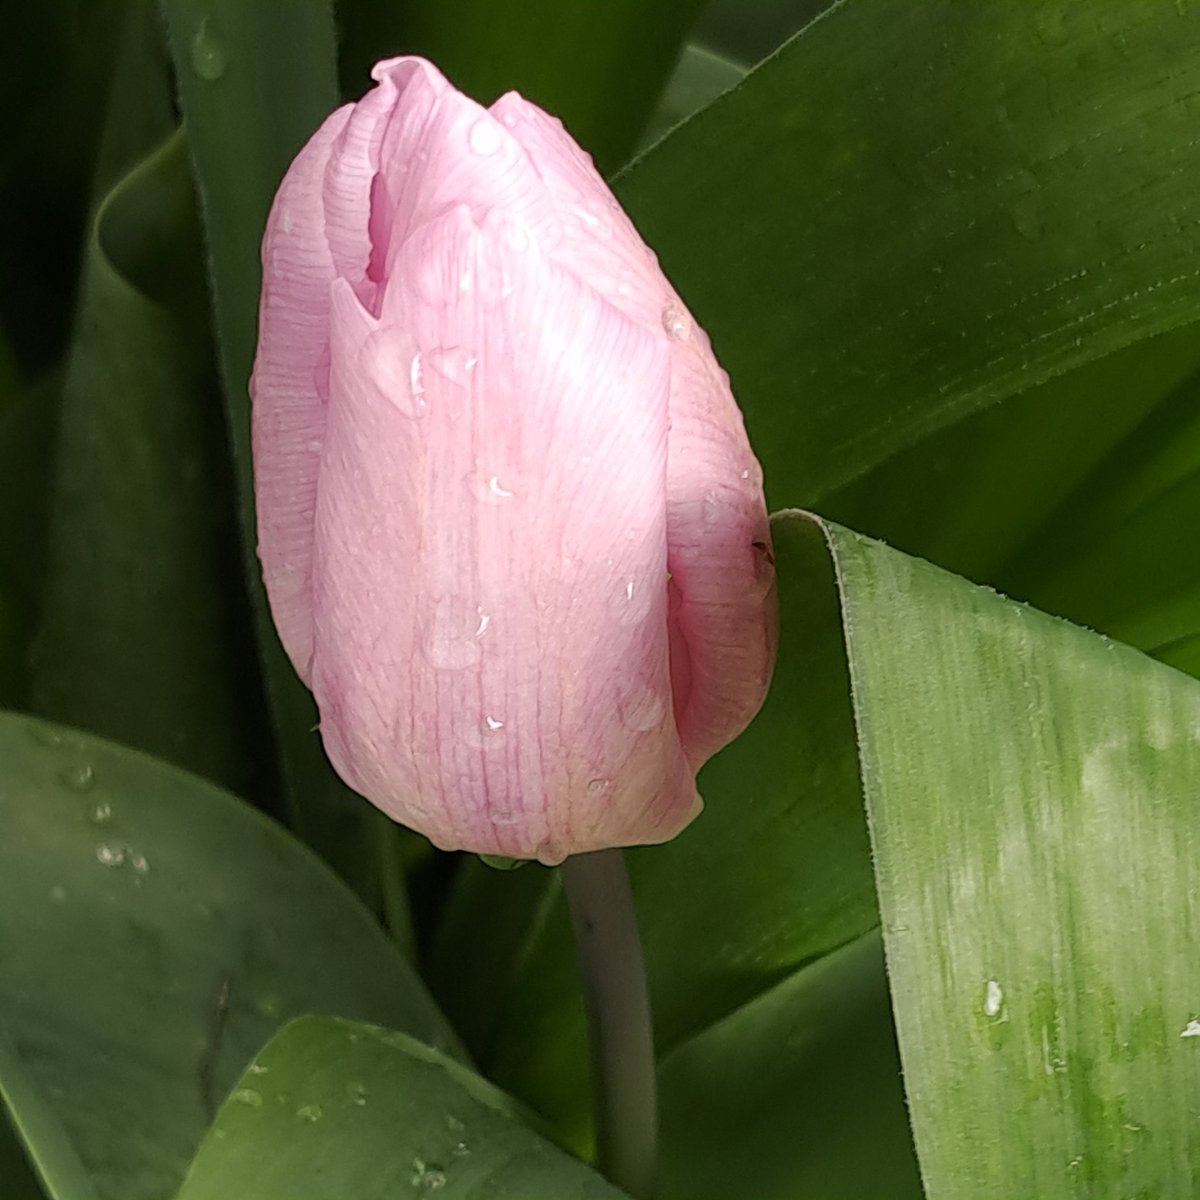 beëindigen. Gelukkig wil hij hulp en heeft hij na bezoek huisarts een afspraak gemaakt bij POH GGZ. Foto's van donkere luchten, maar ook van tulpen om de dag op te vrolijken!

Fijne donderdag, geniet en blijf gezond!😃💙💛🌷
#tulpen #genietenindenatuur